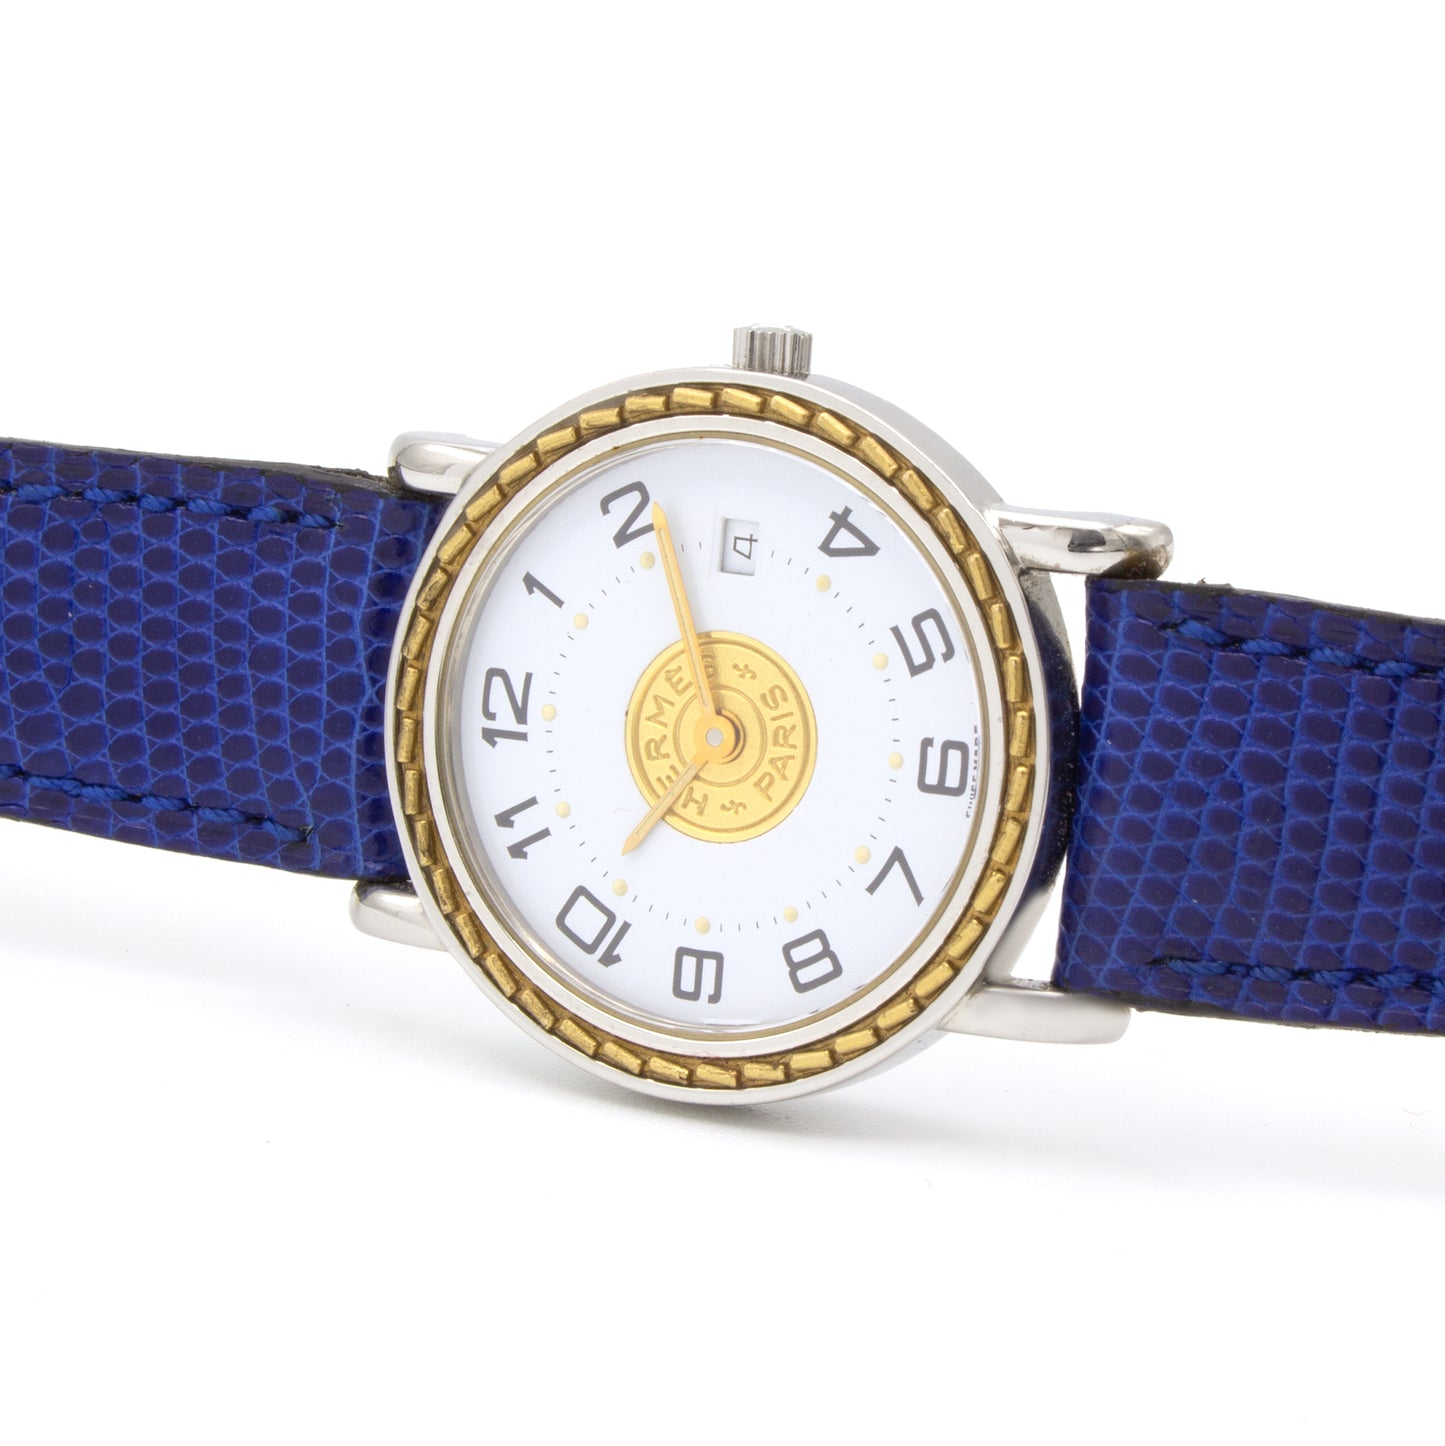 Hermes Sellier watch